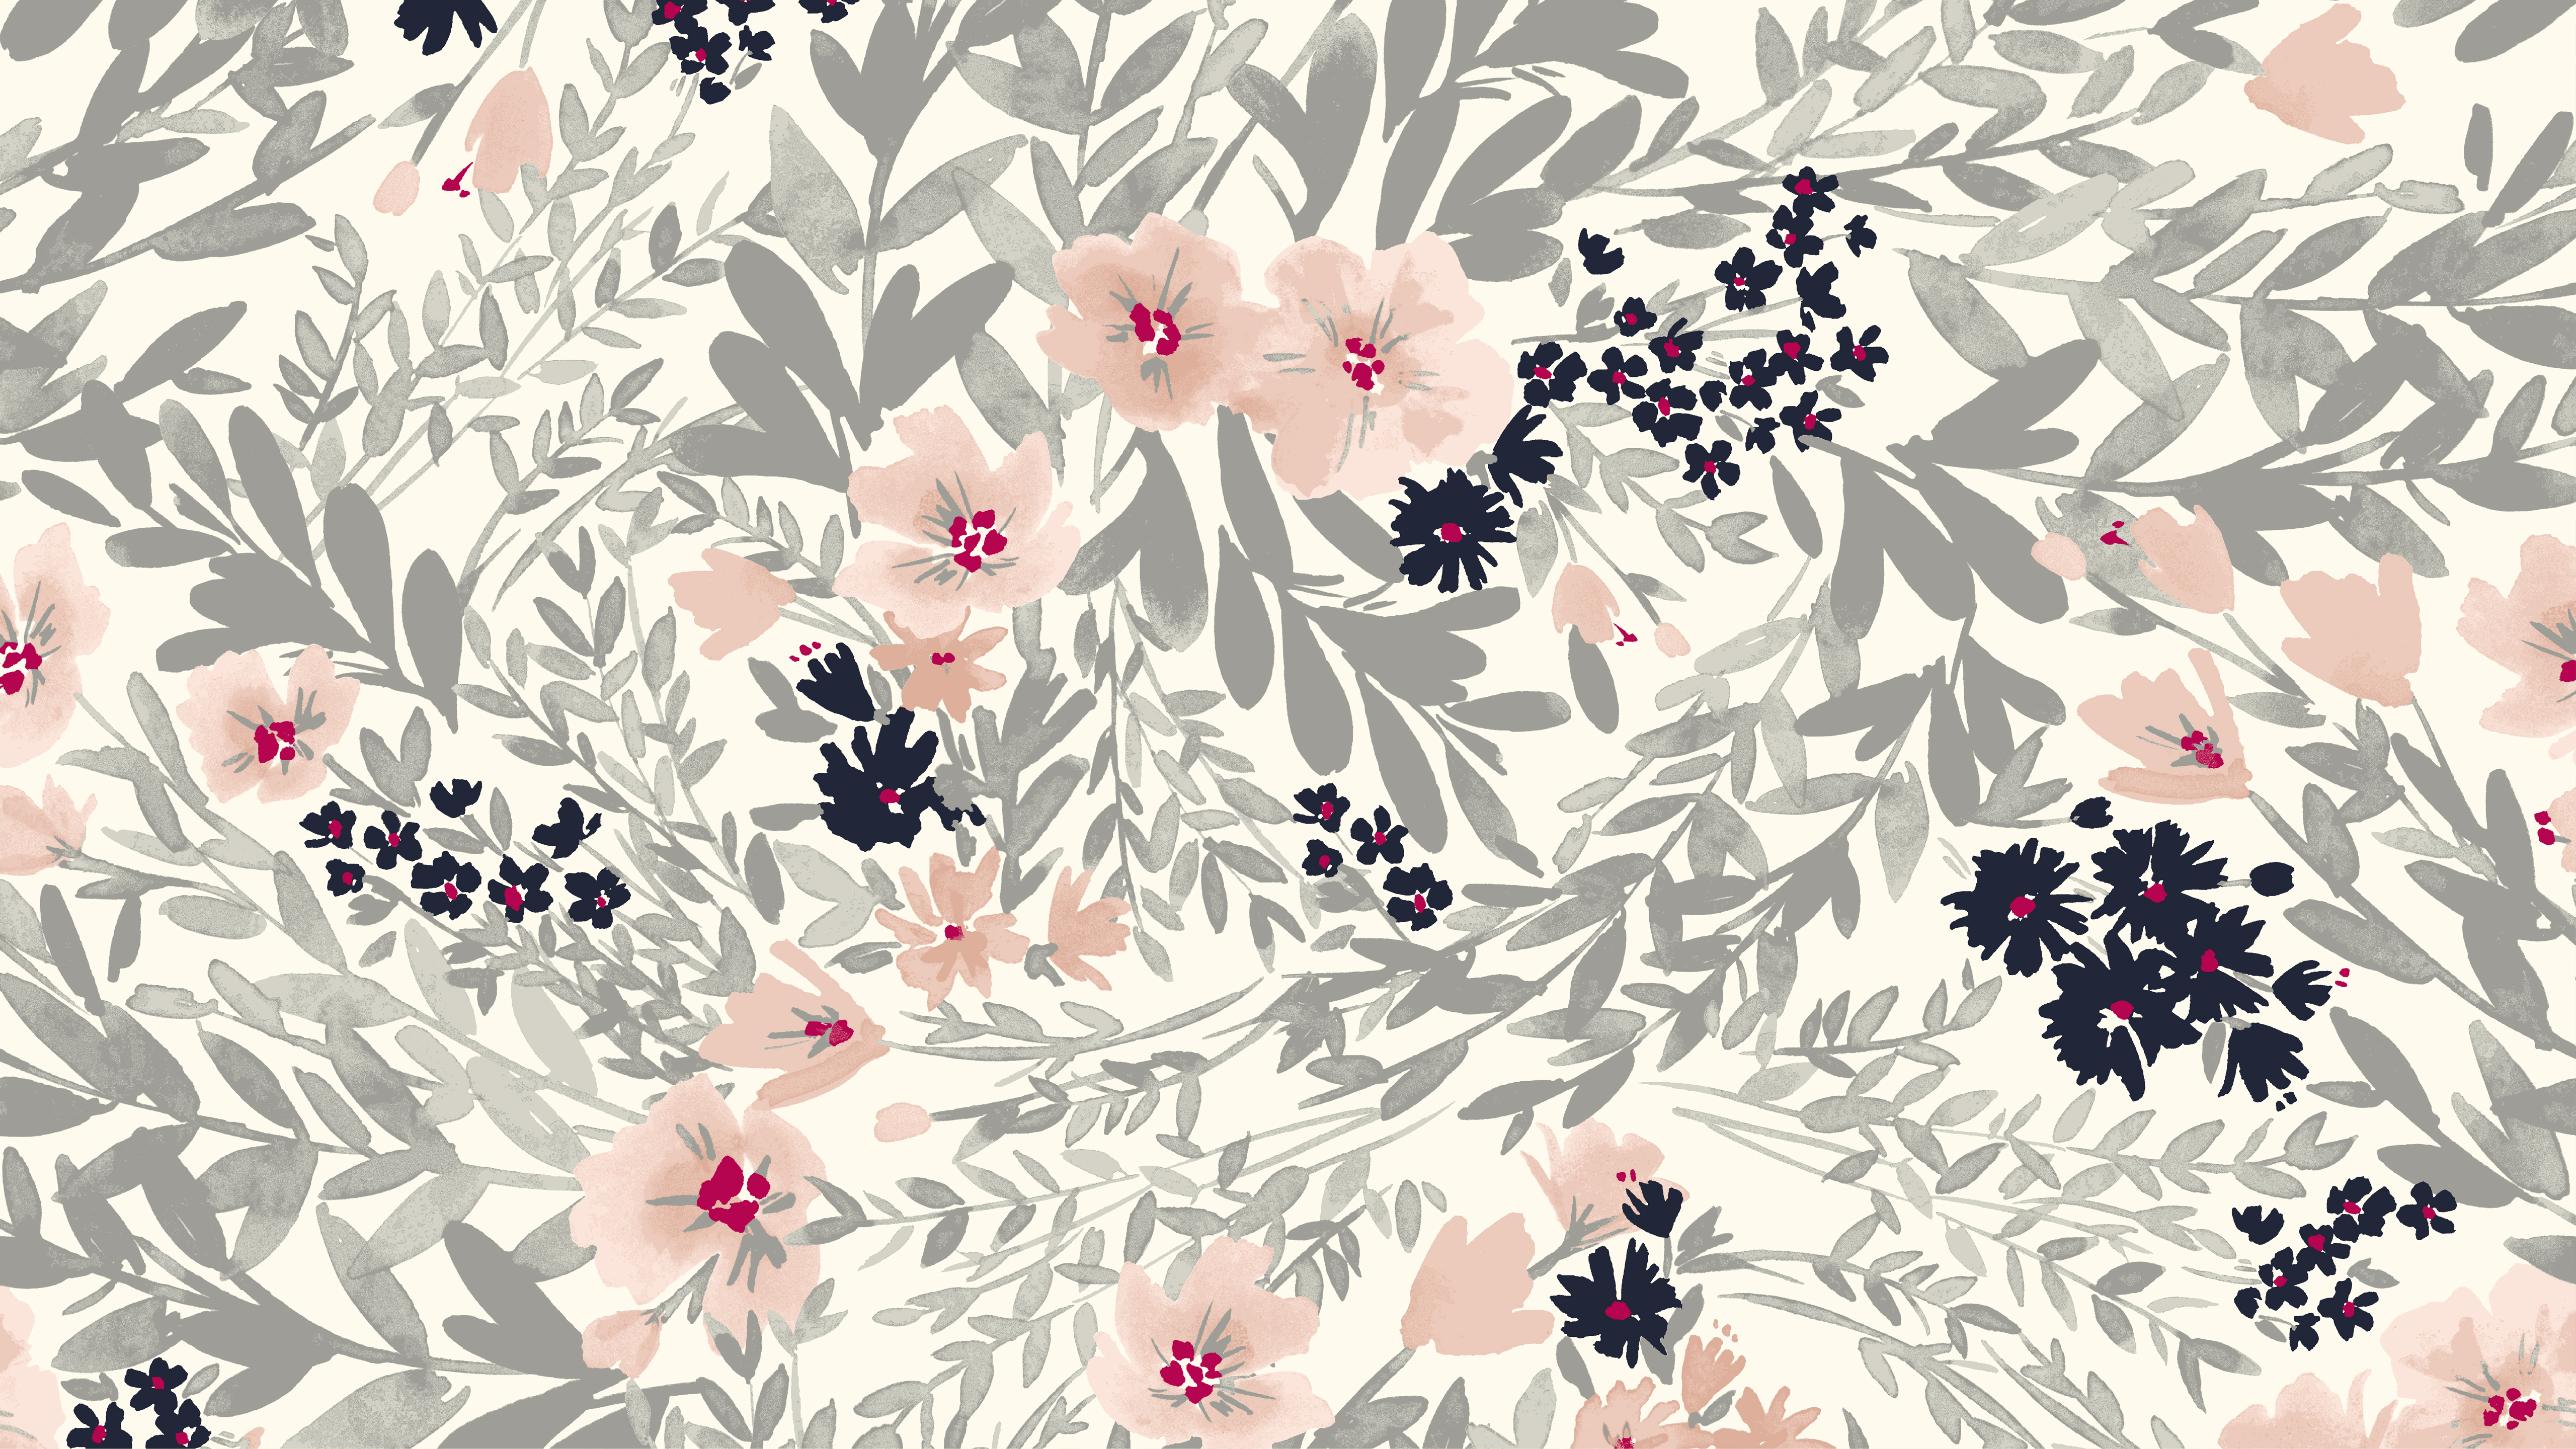 [68+] Free Floral Desktop Wallpaper | WallpaperSafari